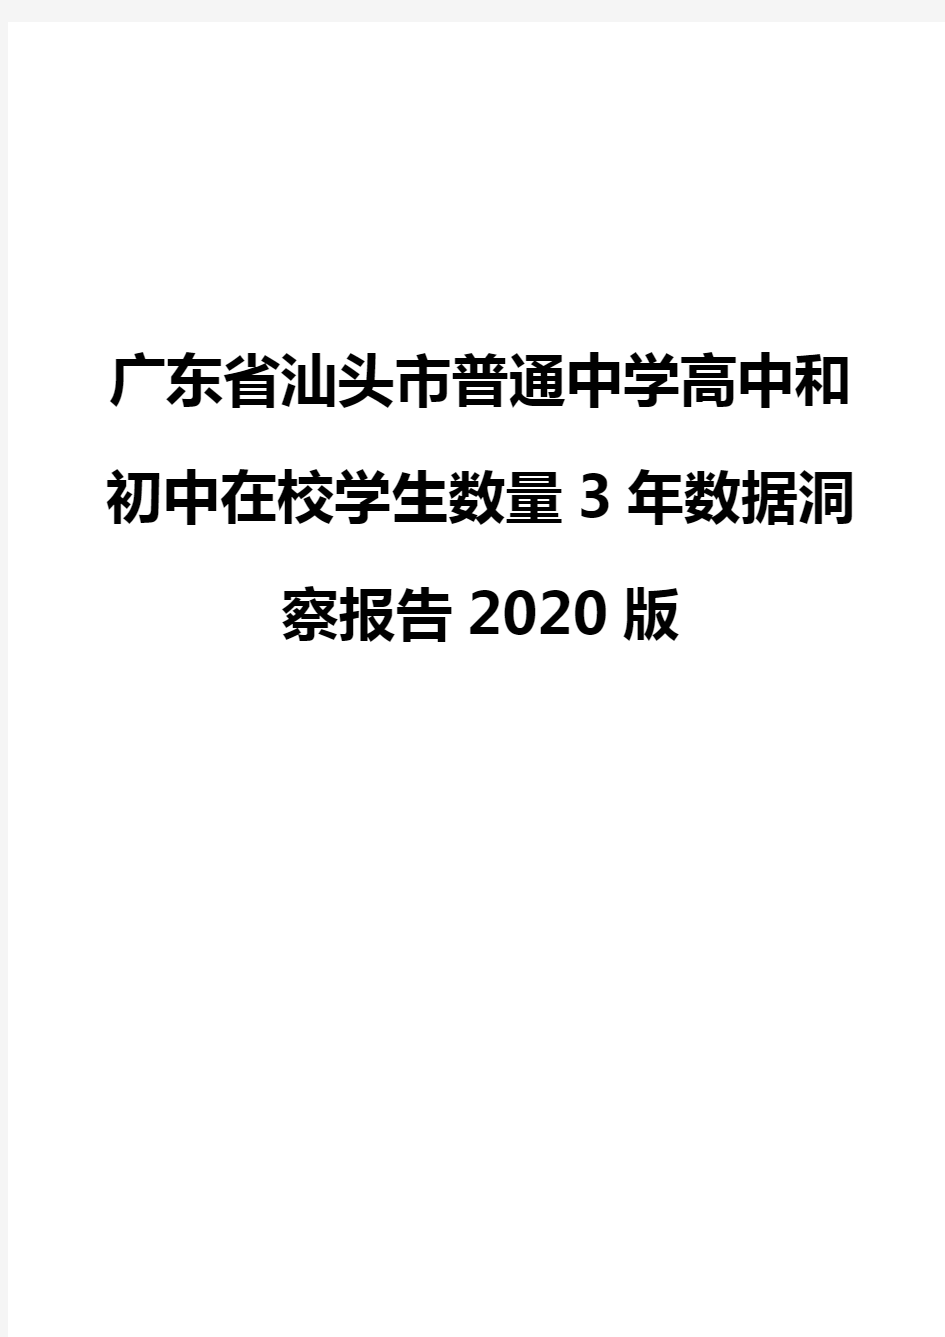 广东省汕头市普通中学高中和初中在校学生数量3年数据洞察报告2020版